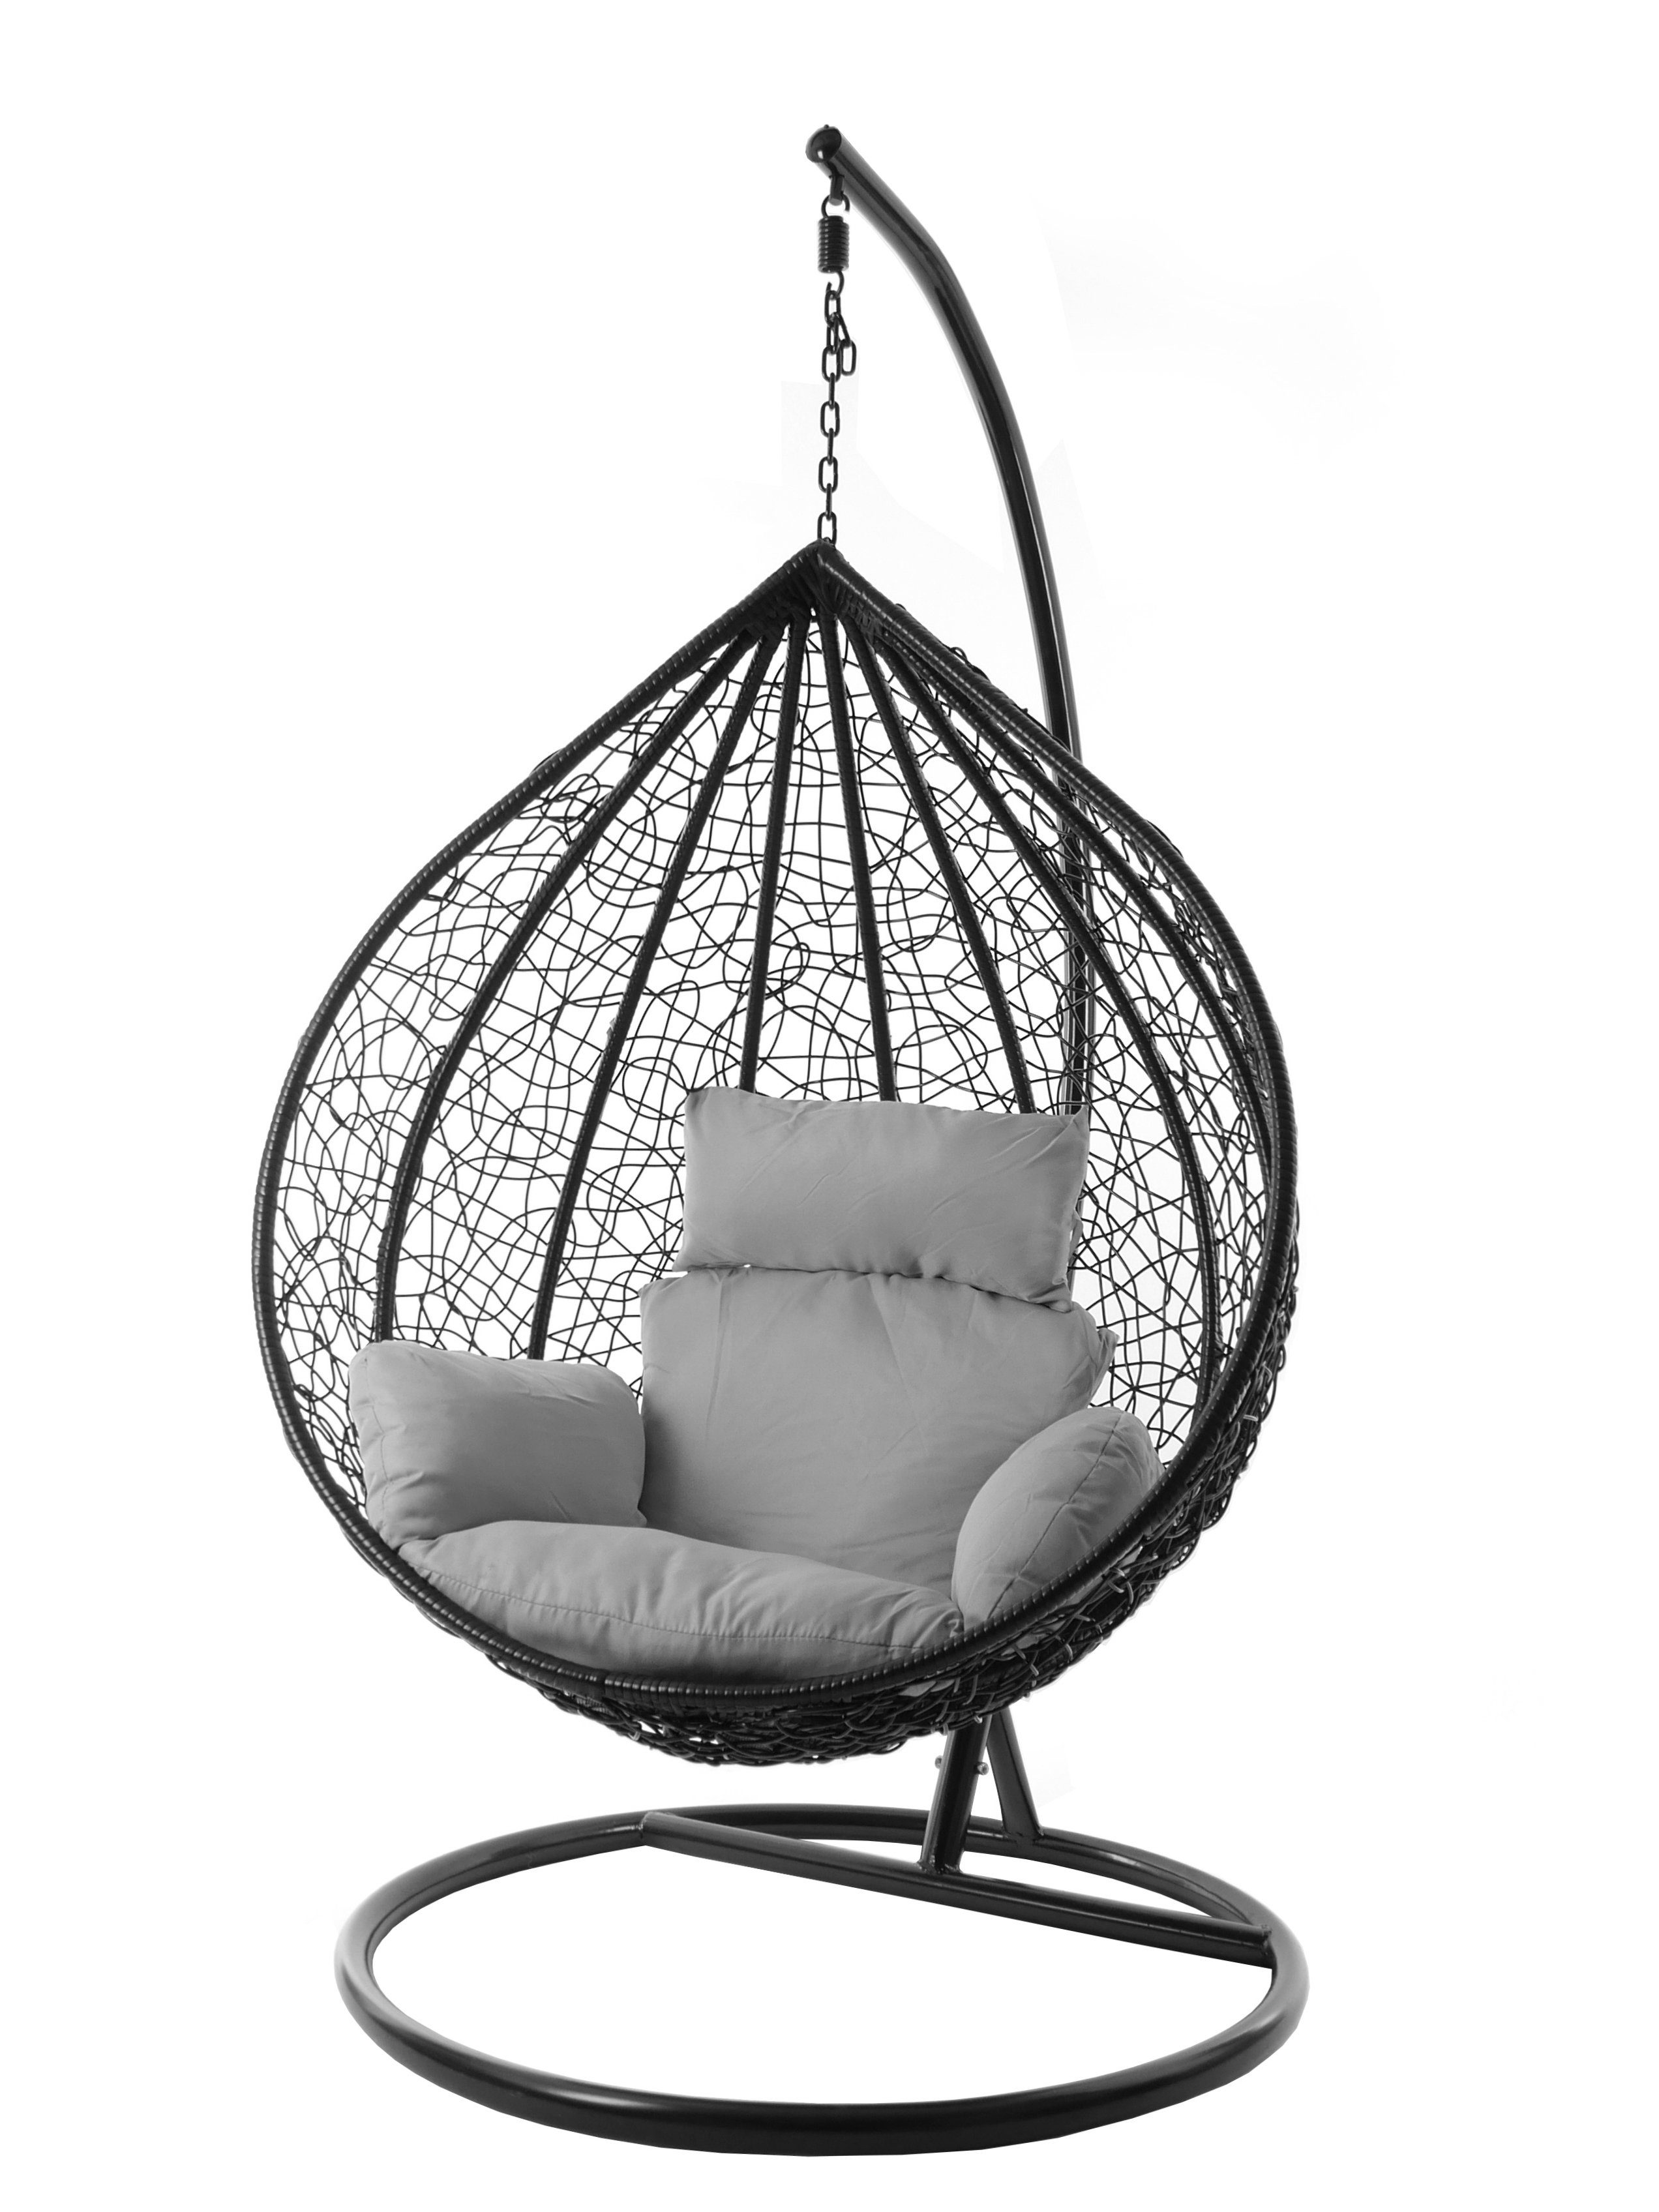 KIDEO Hängesessel Hängesessel MANACOR Chair, XXL edel, Swing verschiedene schwarz, und Nest-Kissen, (8008 cloud) Gestell Kissen Farben inklusive, grau